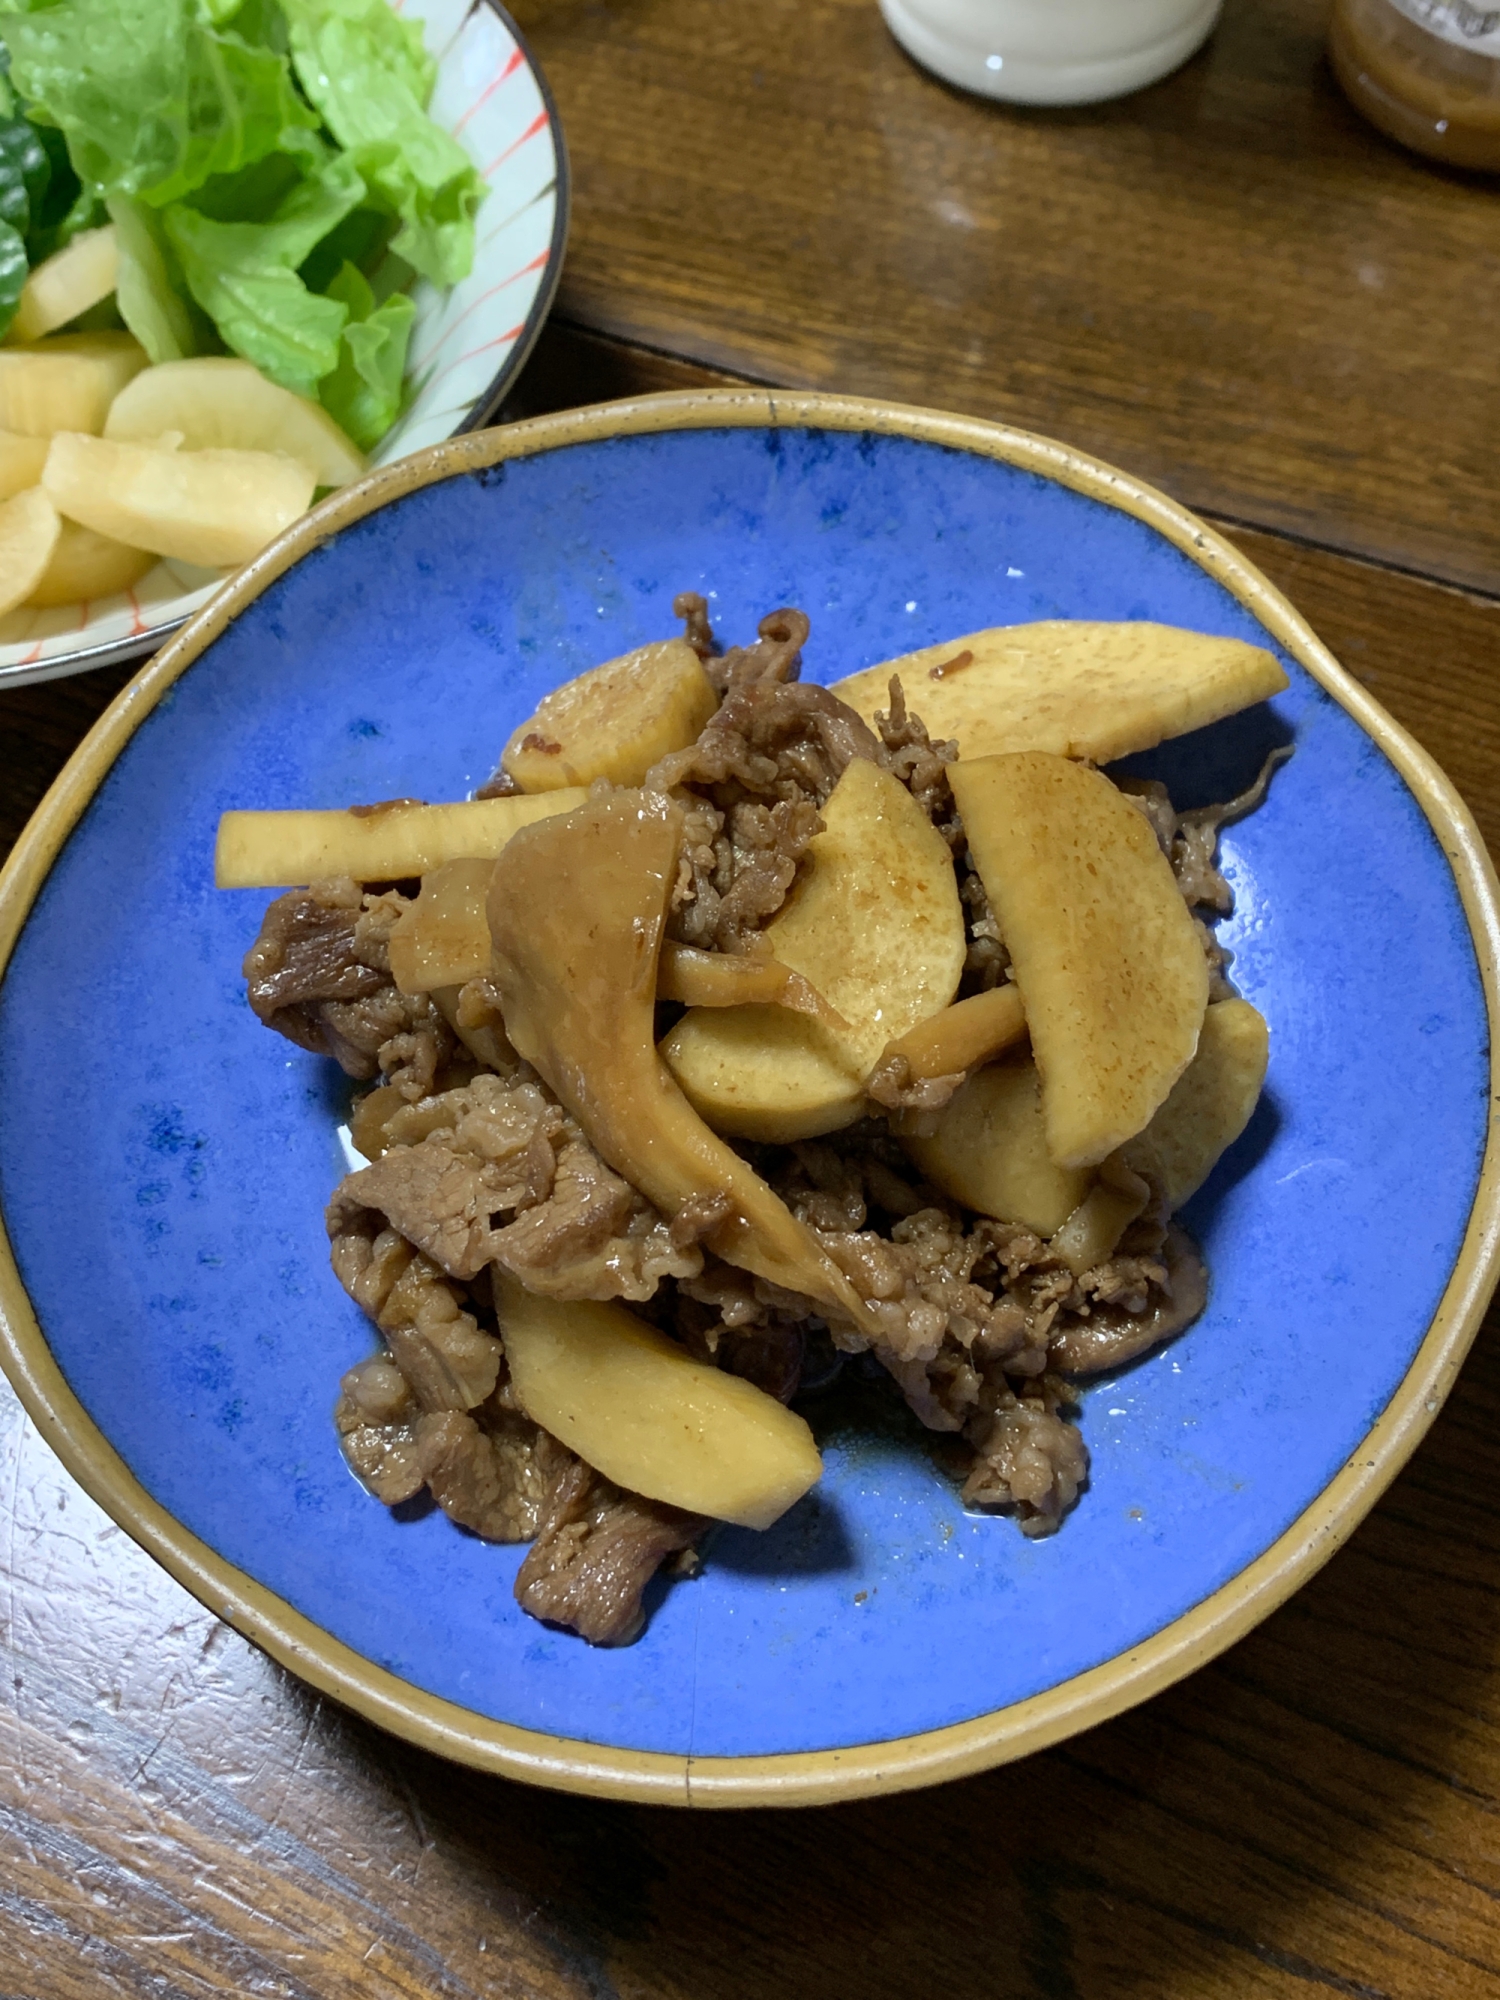 海老芋と牛細切れ肉と舞茸の炒め物